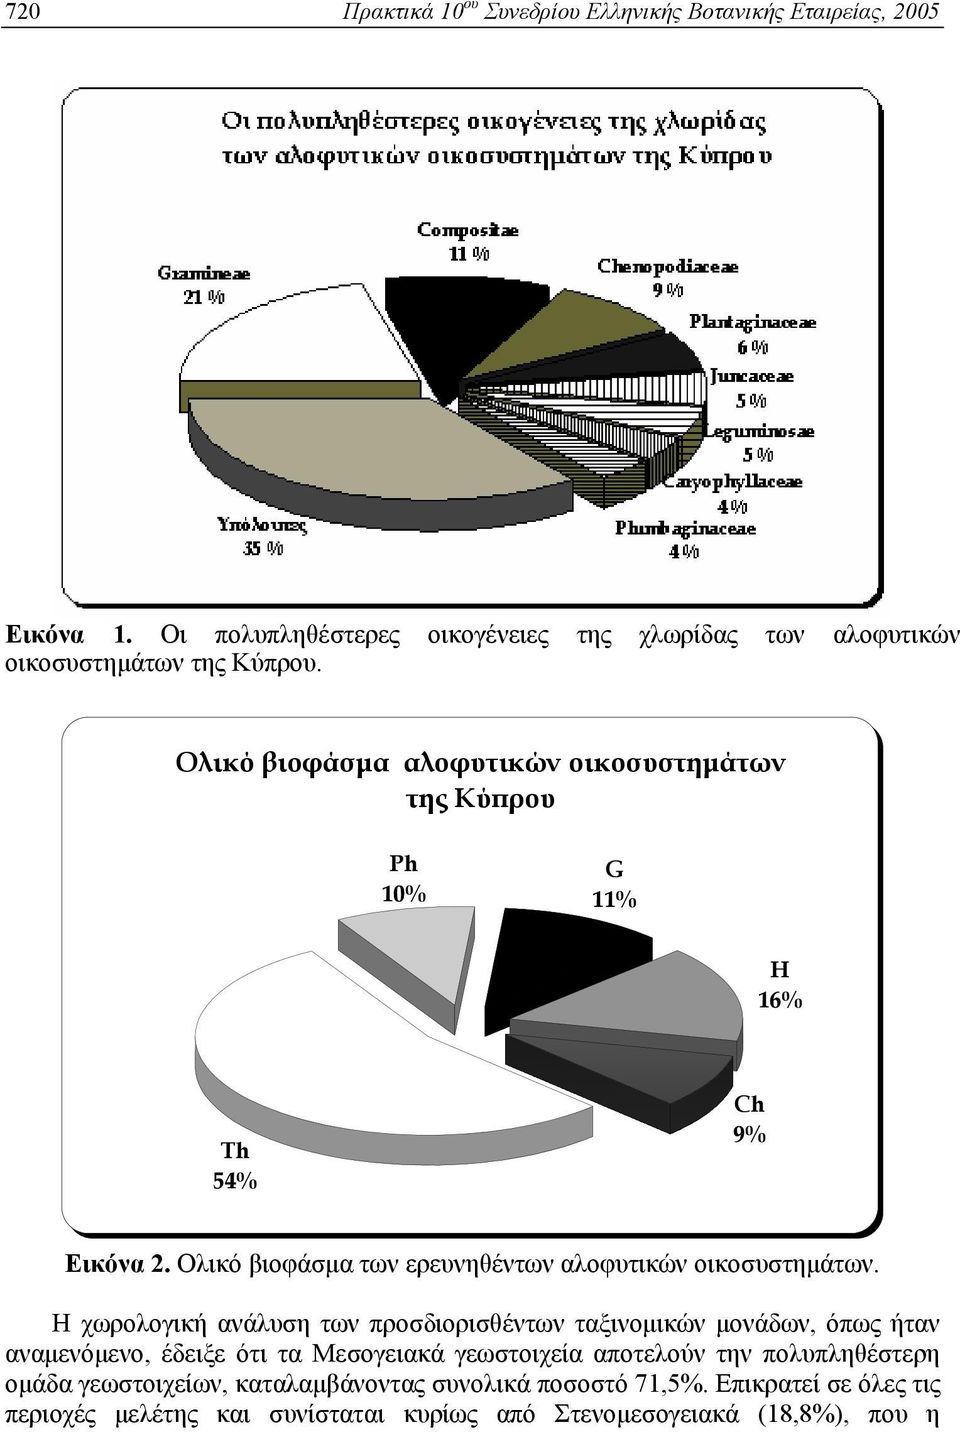 Ολικό βιοφάσμα αλοφυτικών οικοσυστημάτων της Κύπρου Ph 10% G 11% H 16% Th 54% Ch 9% Εικόνα 2. Ολικό βιοφάσμα των ερευνηθέντων αλοφυτικών οικοσυστημάτων.